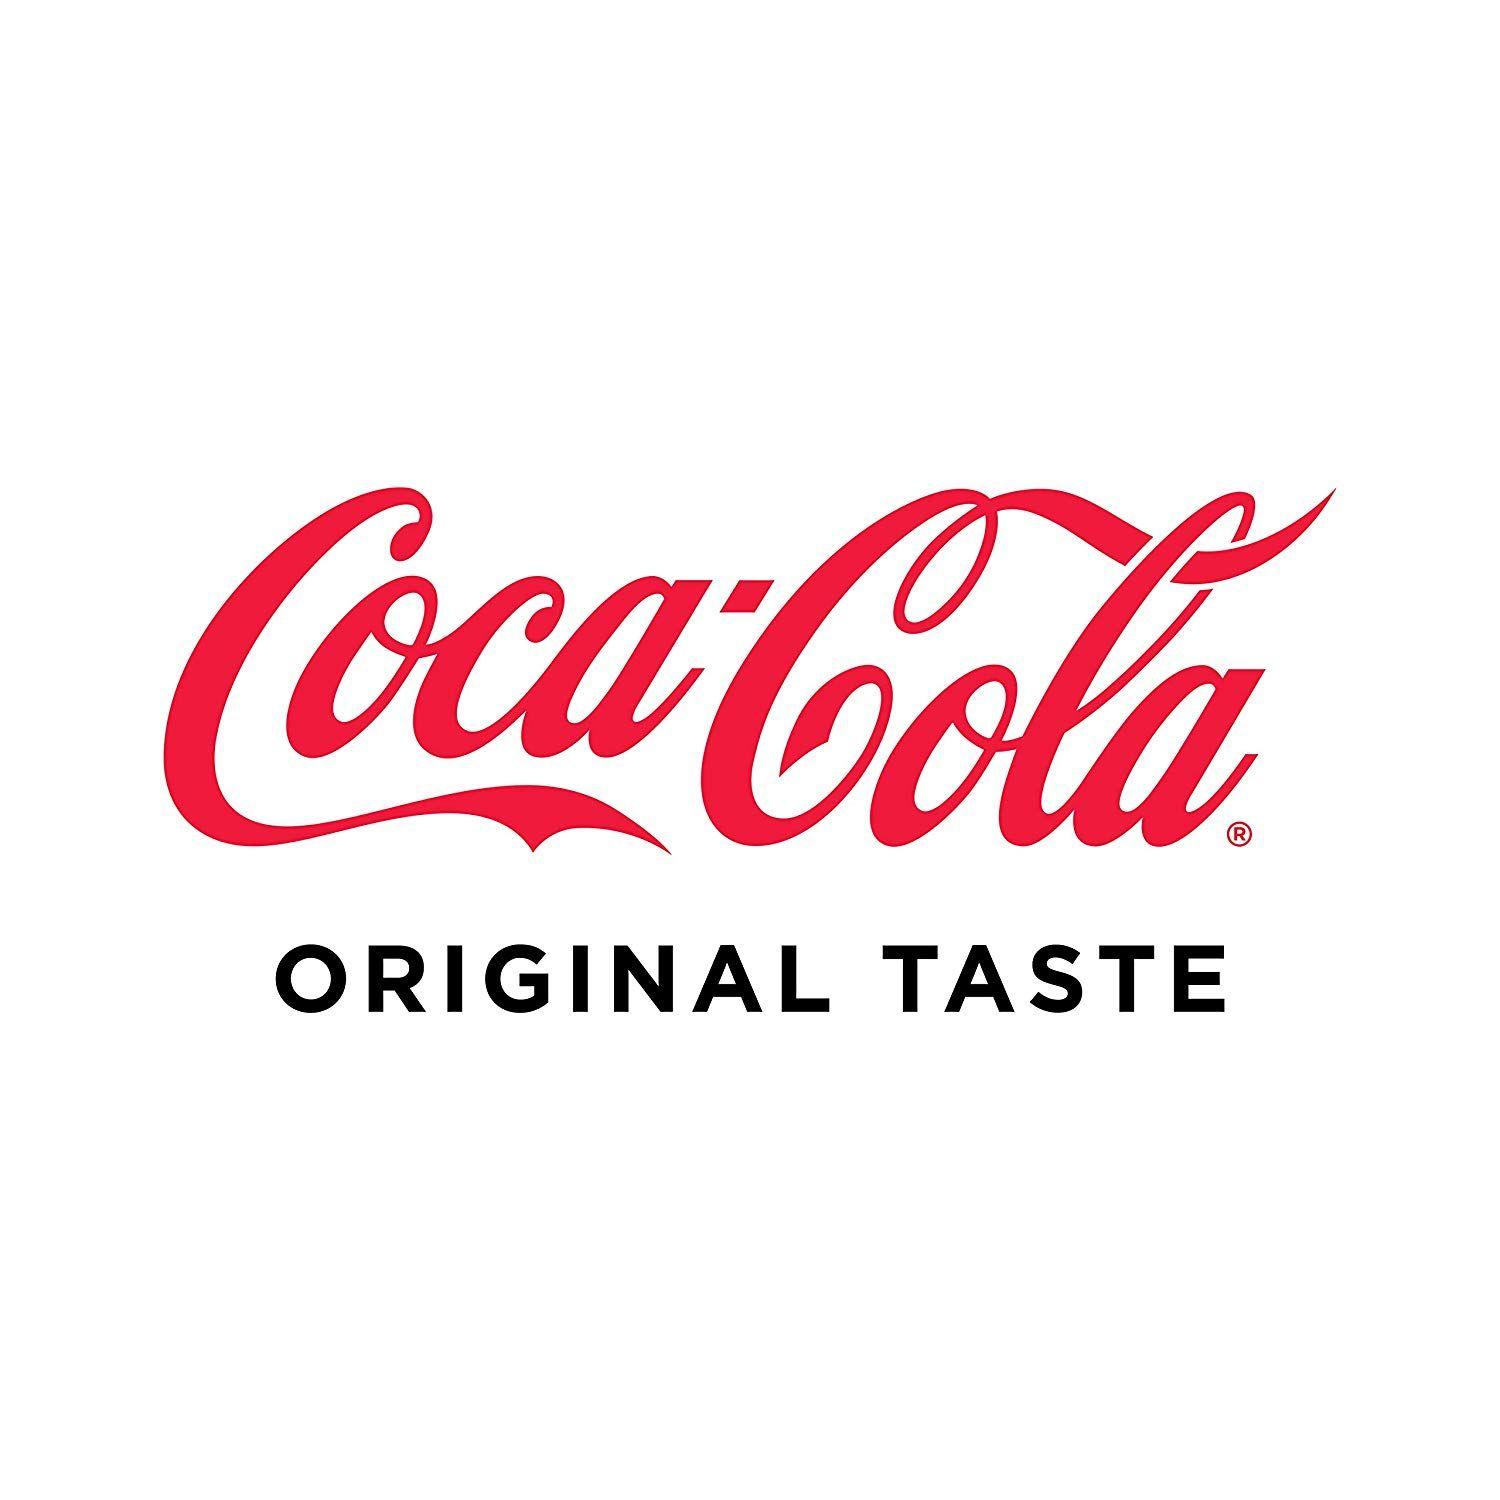 Coca-Cola Original Logo - Amazon.com : Coca-Cola Soda Soft Drink, 8.5 fl oz, 12 Pack : Grocery ...